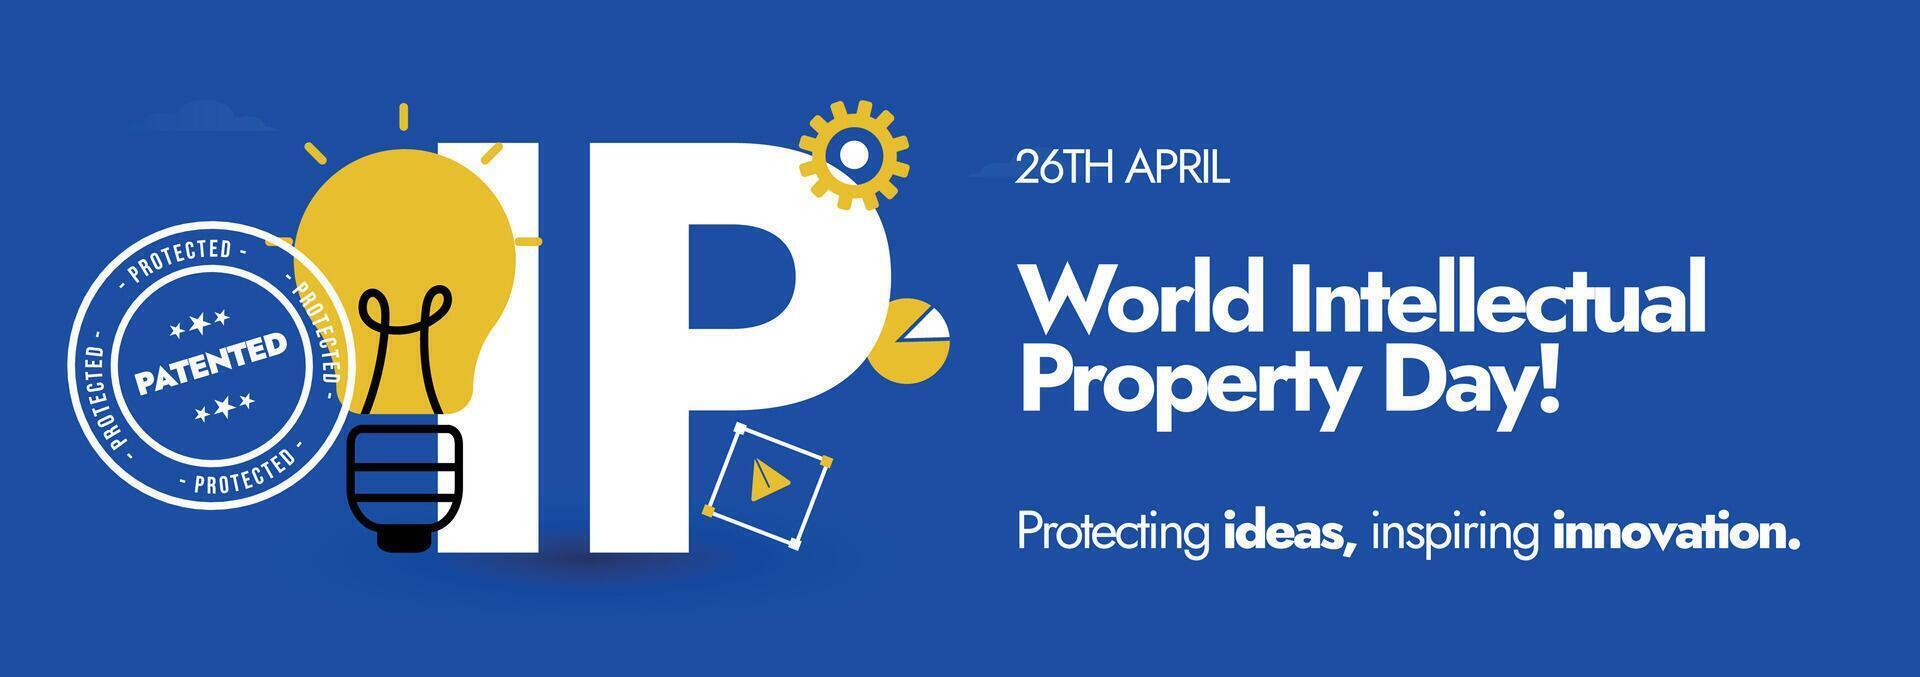 mundo intelectual propiedad día.26 abril mundo ip día celebracion cubrir bandera con ligero bulbo en amarillo color con ip escrito en púrpura color antecedentes. proteger ideas para mejor negocio. vector